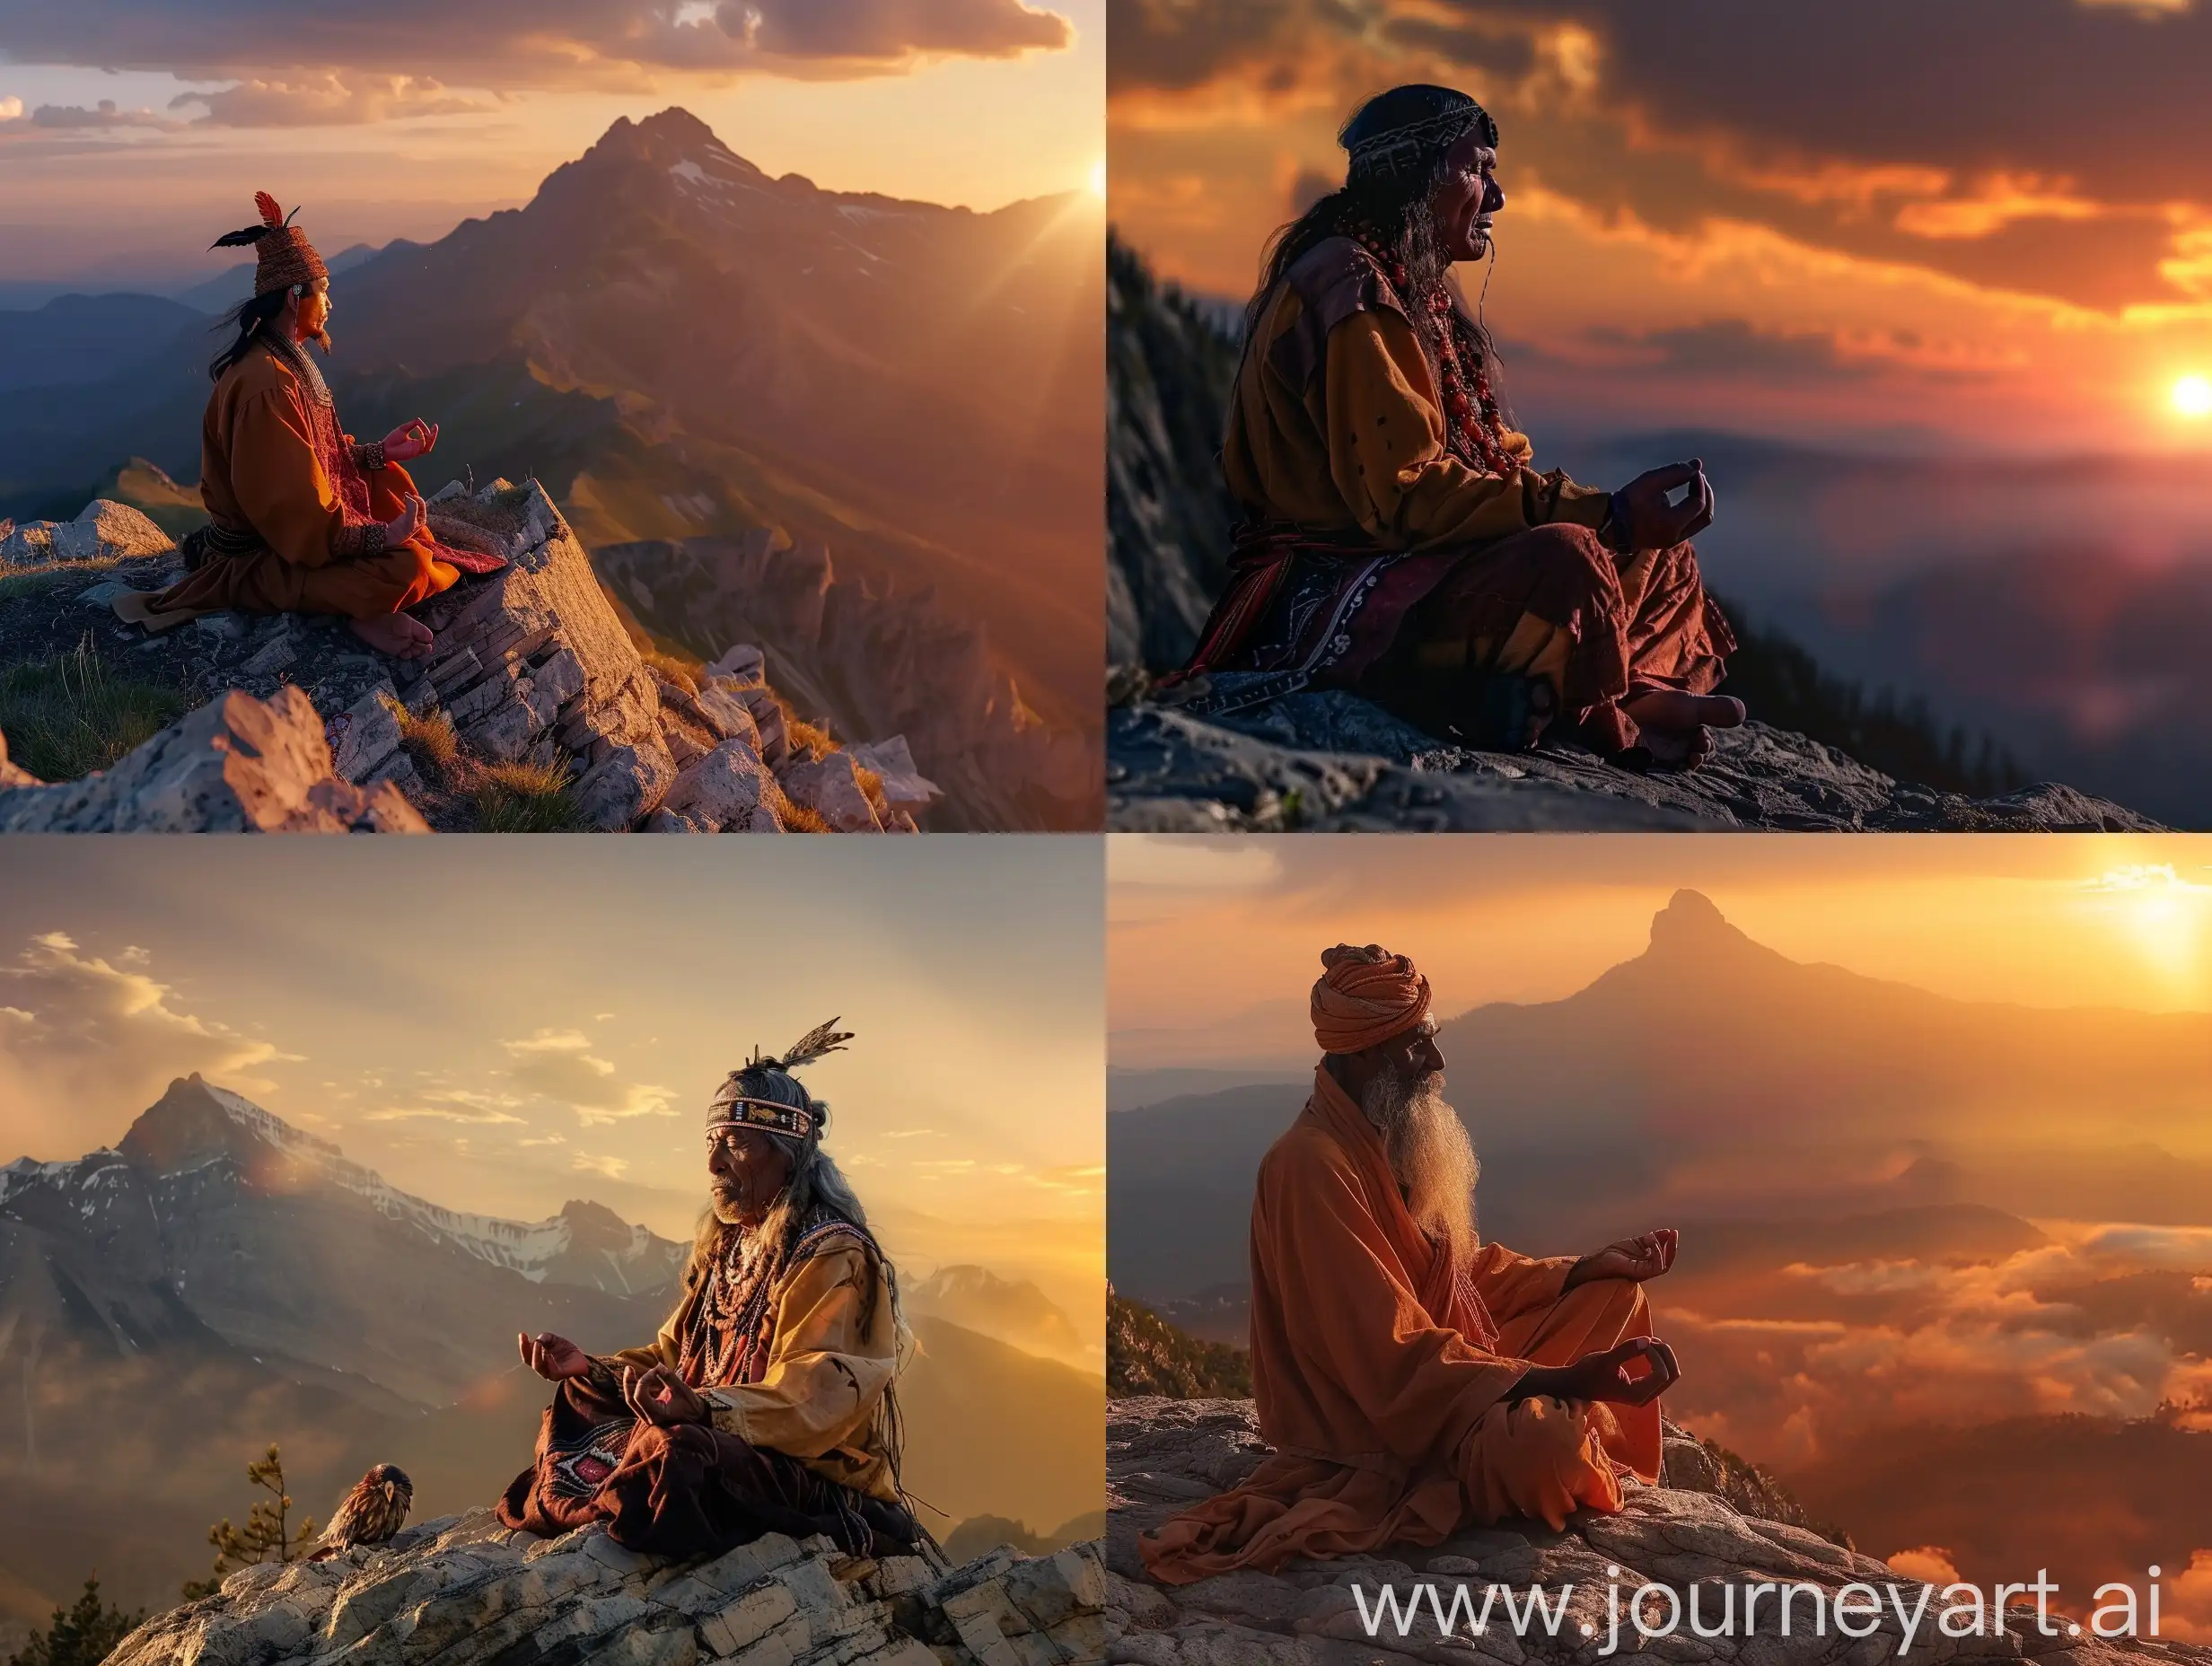 Altai-Shaman-Meditating-on-Mountain-Summit-at-Sunset